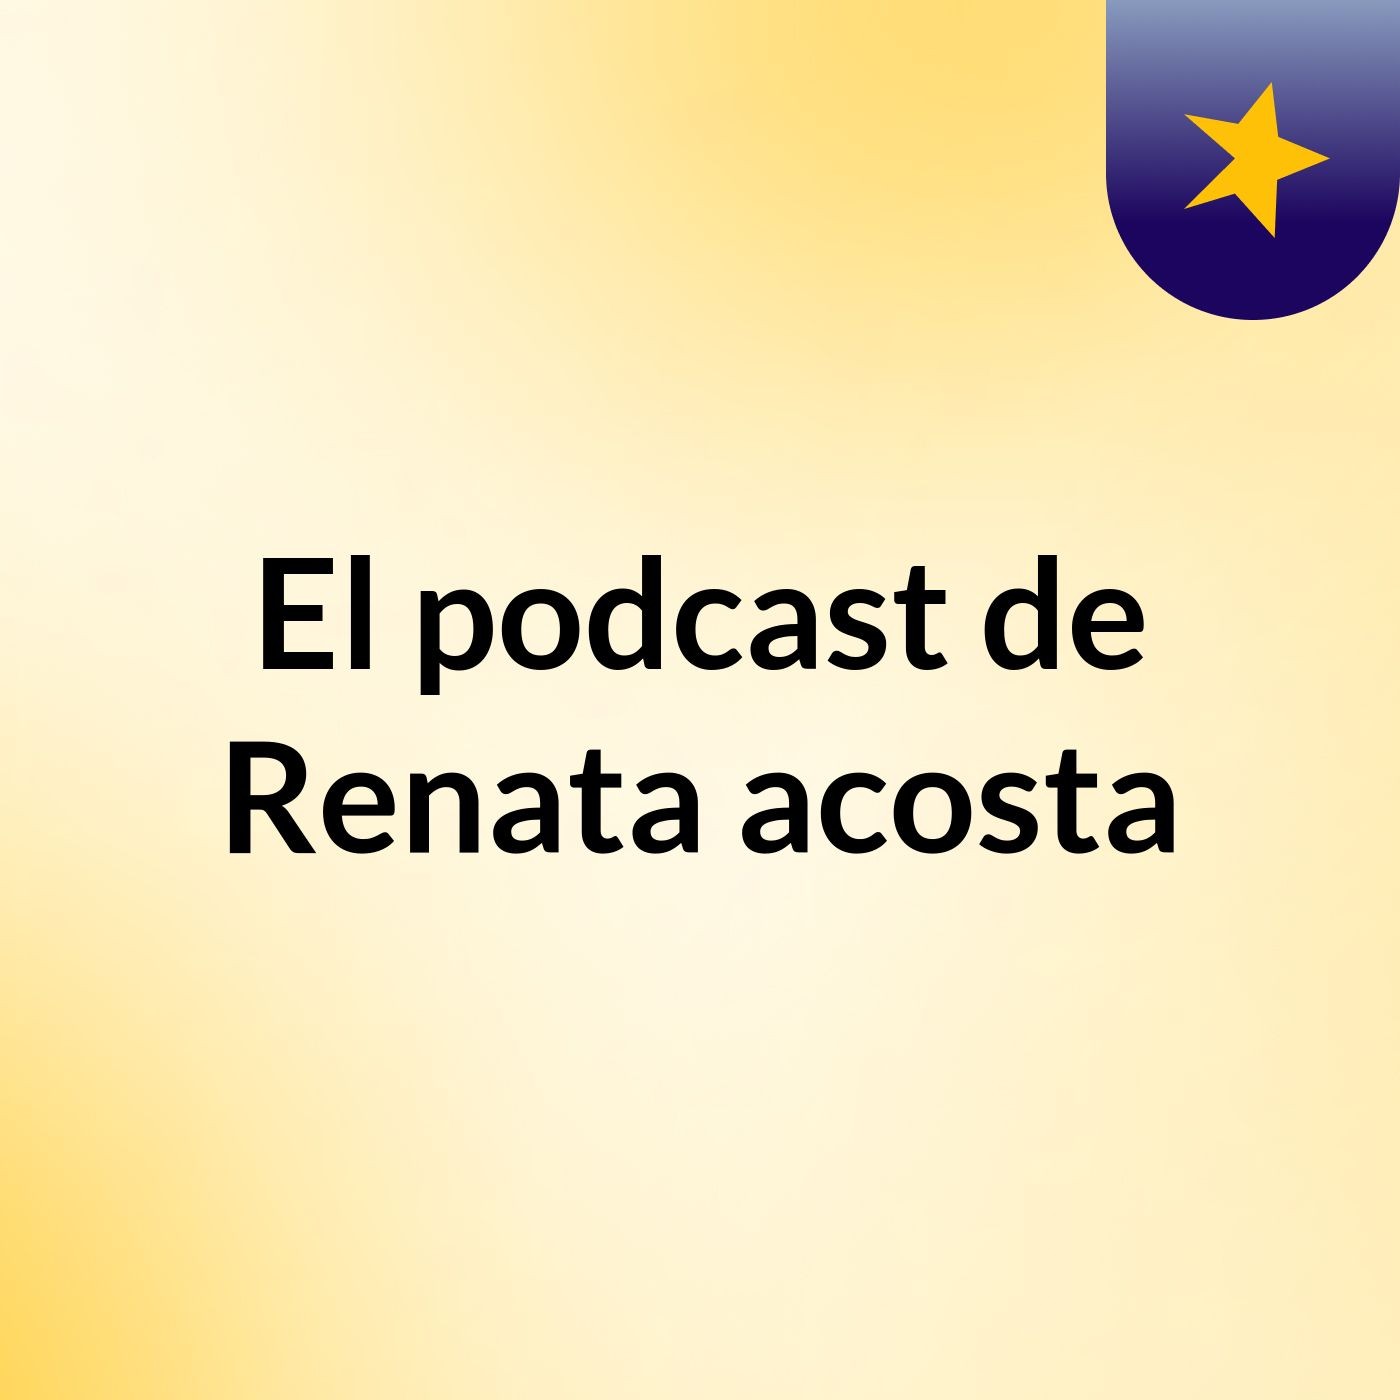 El podcast de Renata acosta